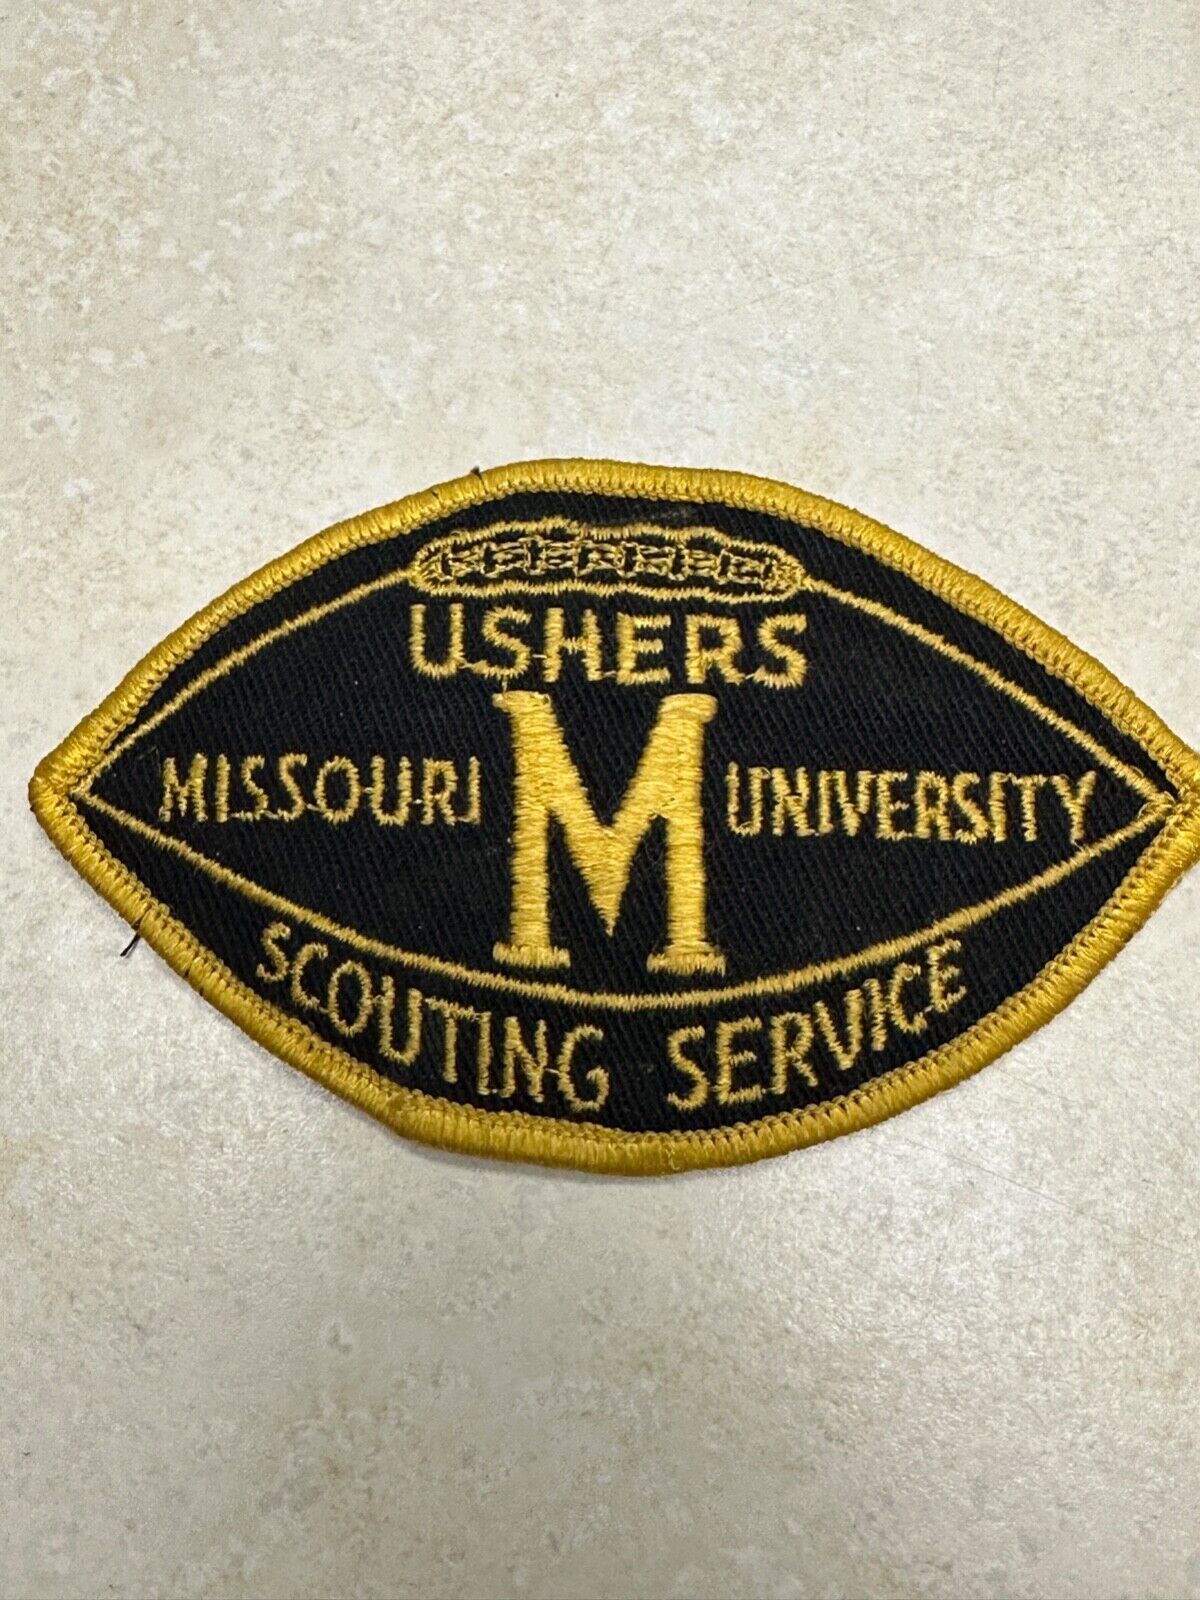 Vintage University of Missouri Boy Scout Ushers Patch - 1953?